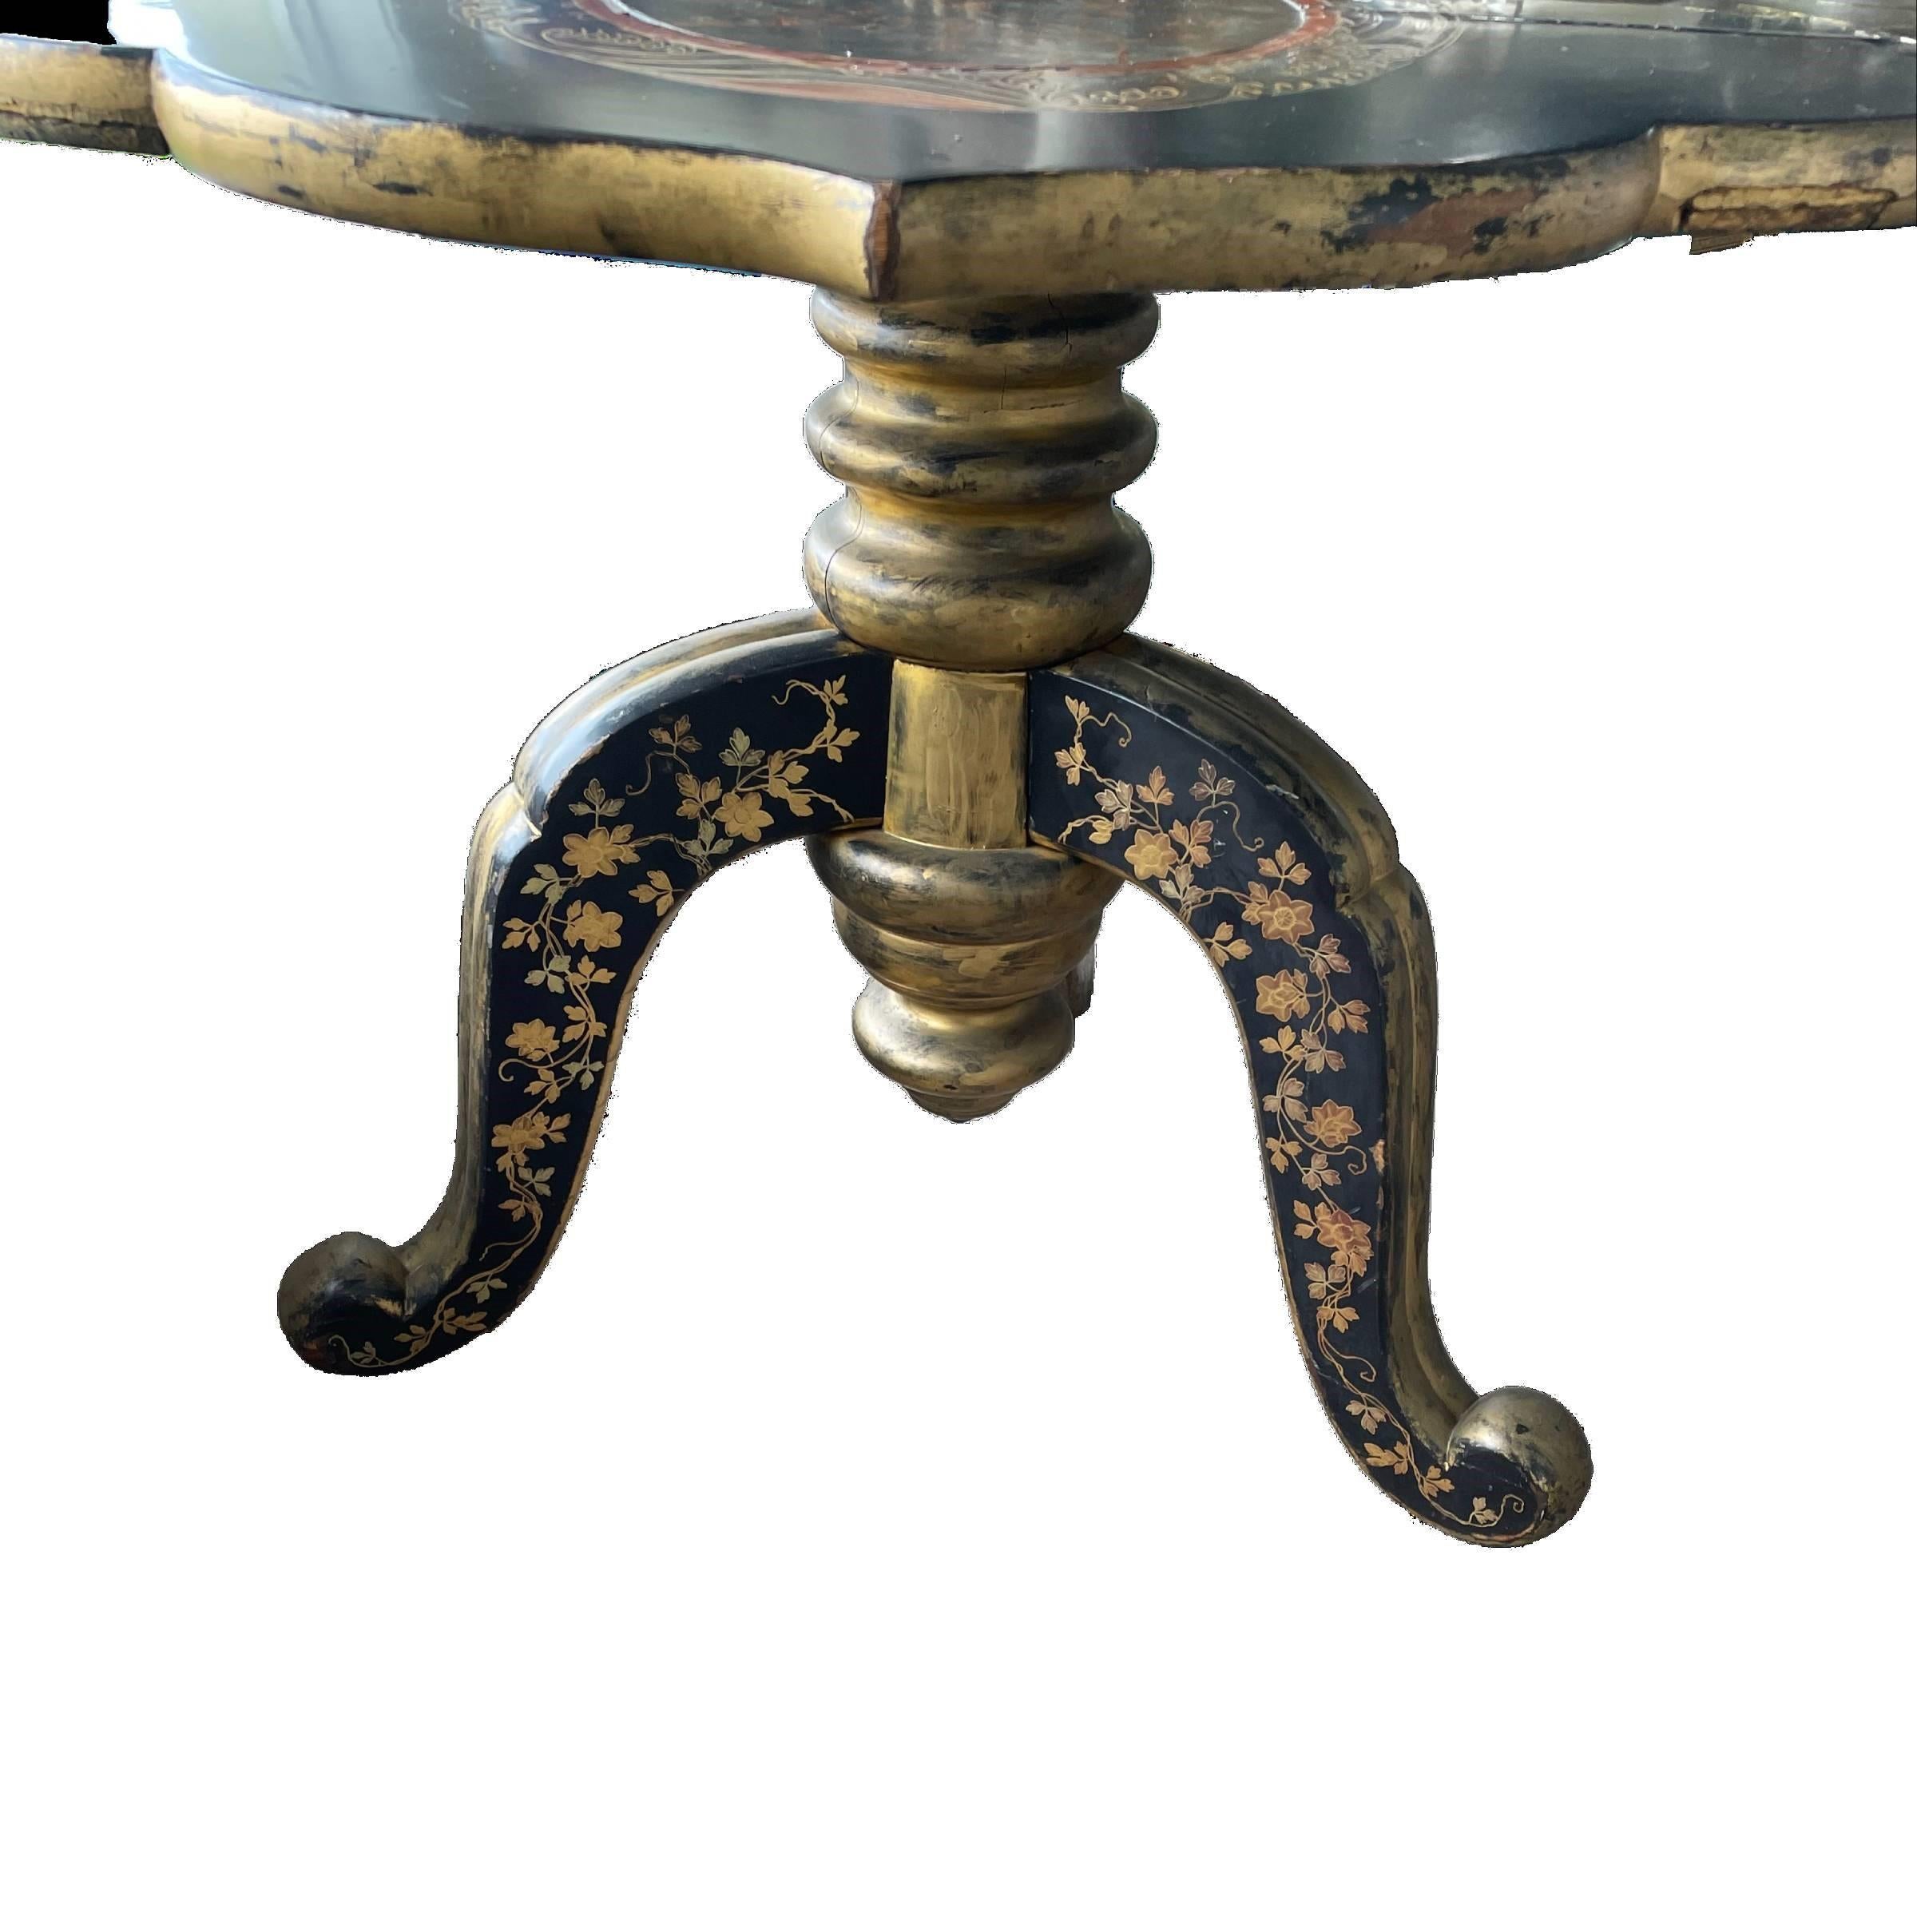 Ein antiker Holztisch im Chinoiserie-Stil, schwarz lackiert, mit roten und goldenen Ätzungen auf der Platte und den Beinen. Der massive, gedrehte zentrale Stiel ist mit Gold überzogen. Dieser elegante Tisch lässt sich zu einer Konsole falten.   